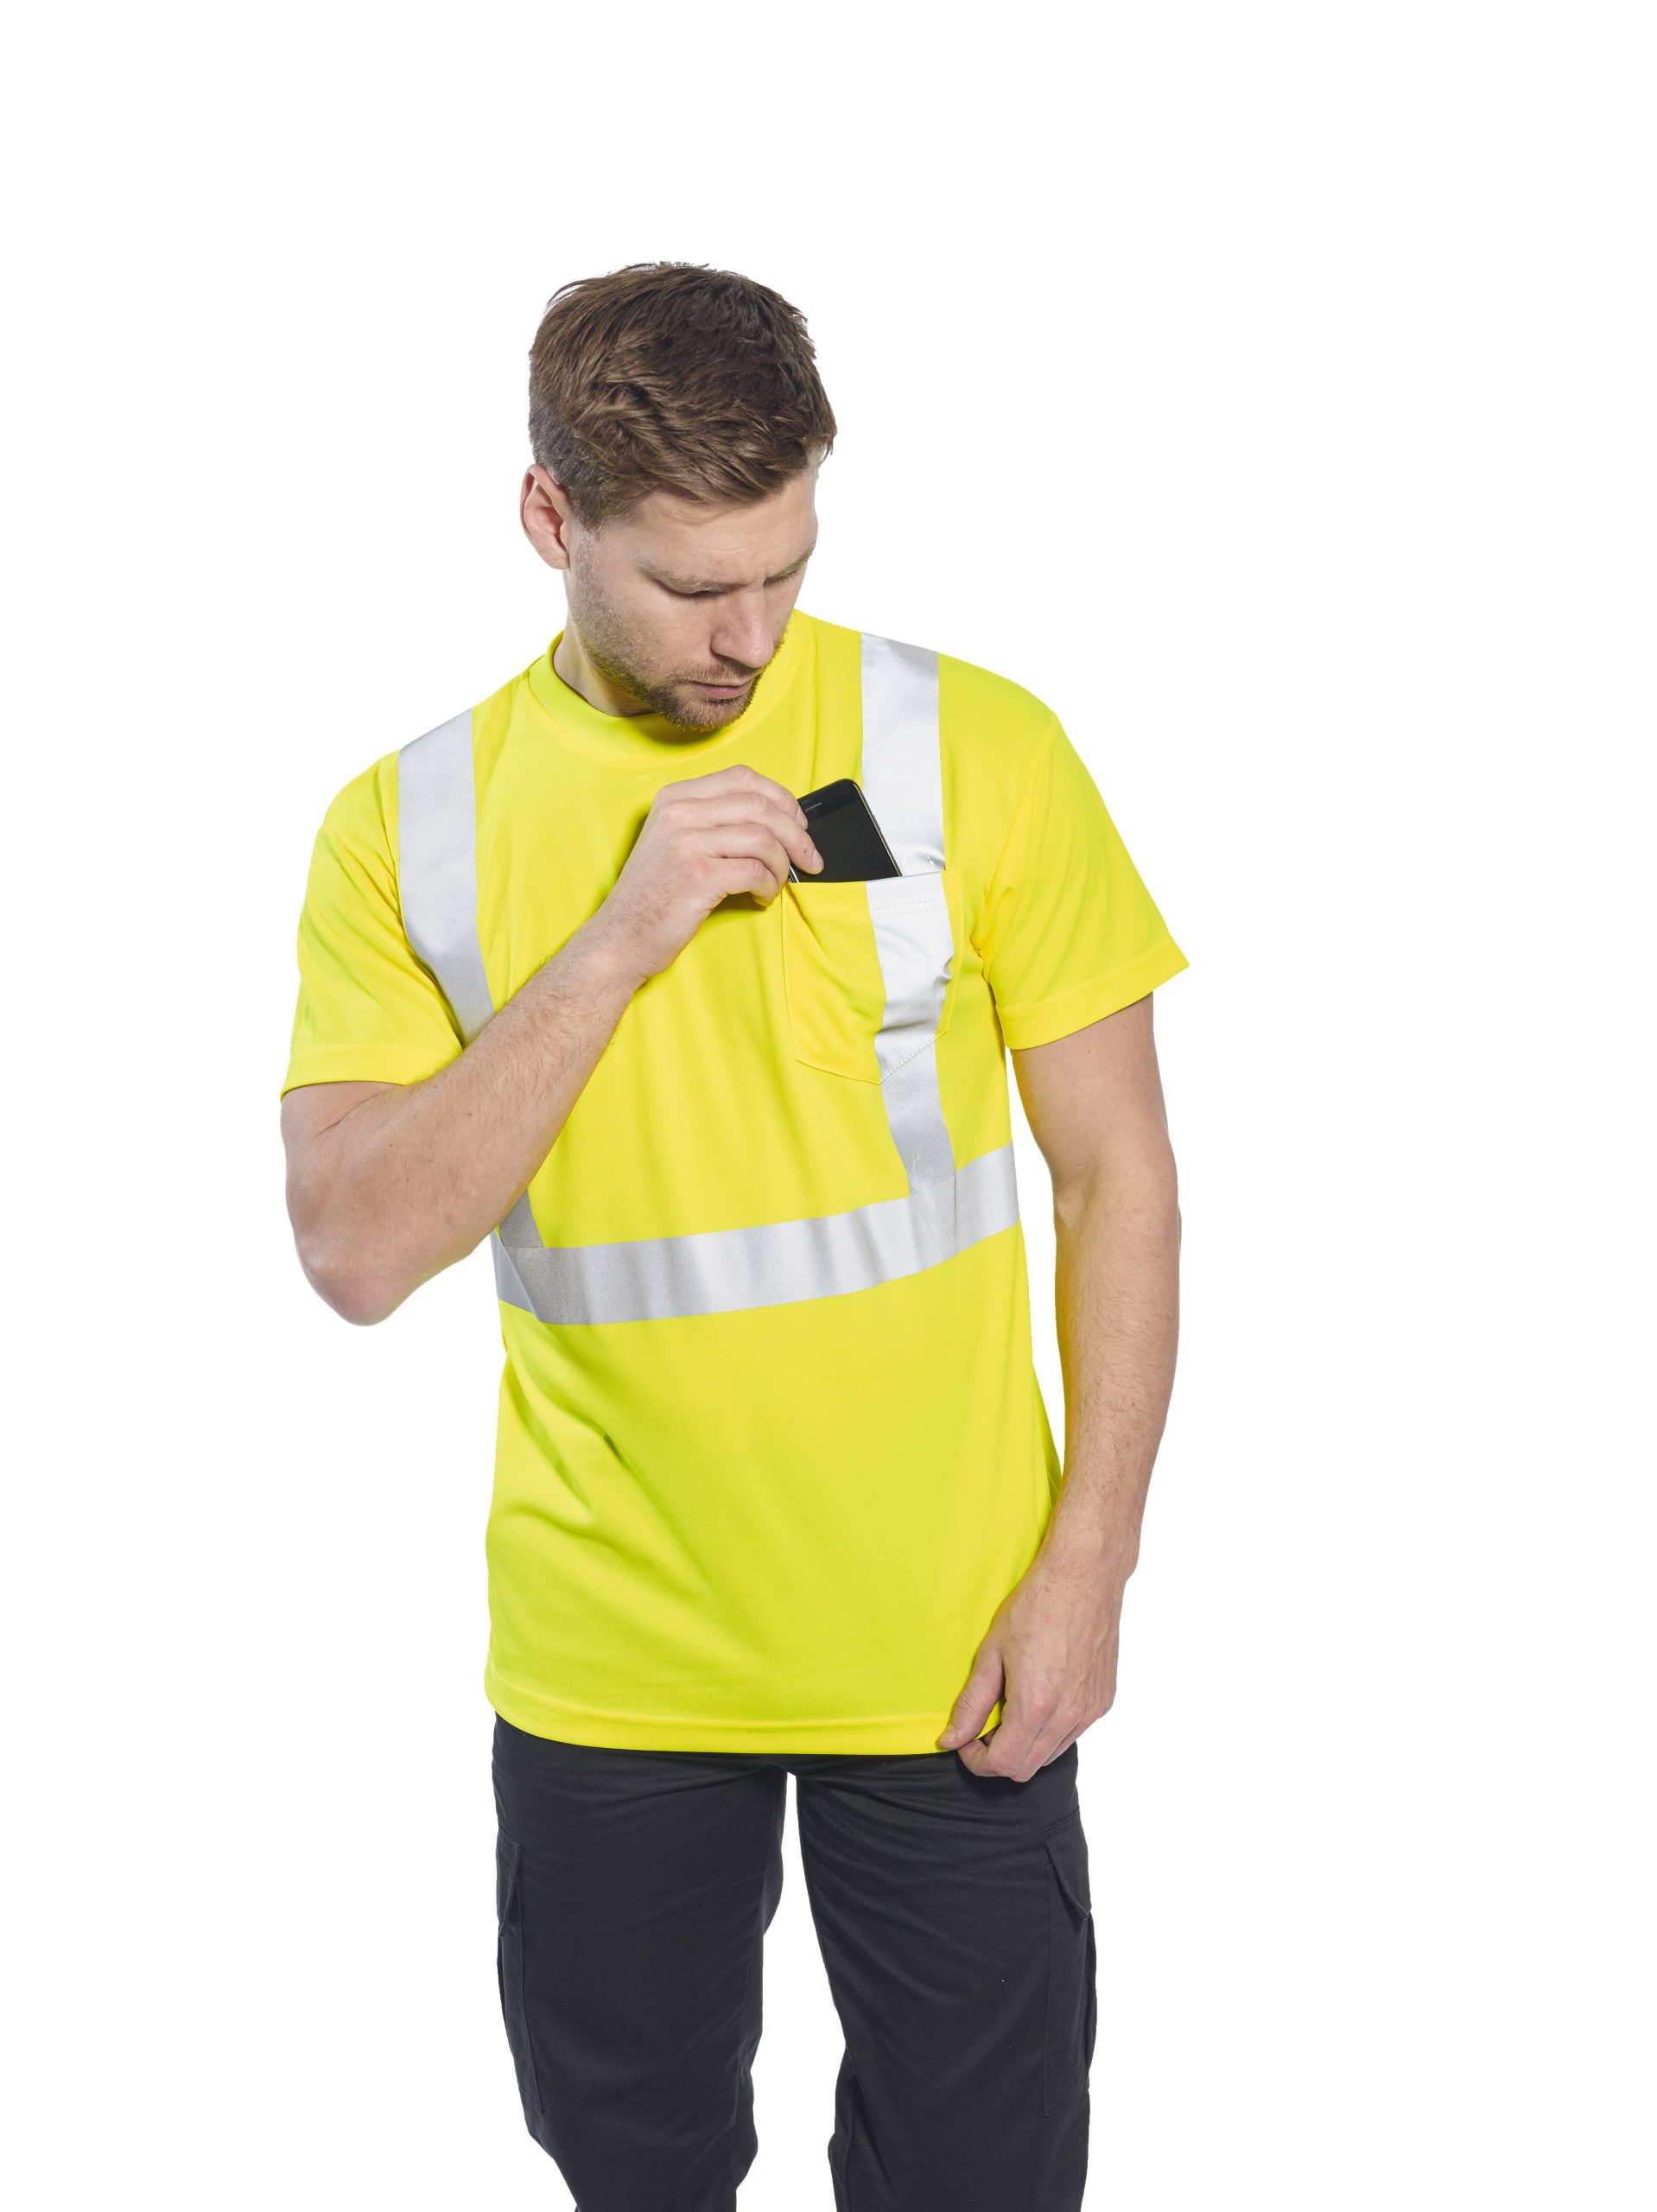 Portwest HI VIS en coton orange poche confort à manches courtes T-Shirt-S190